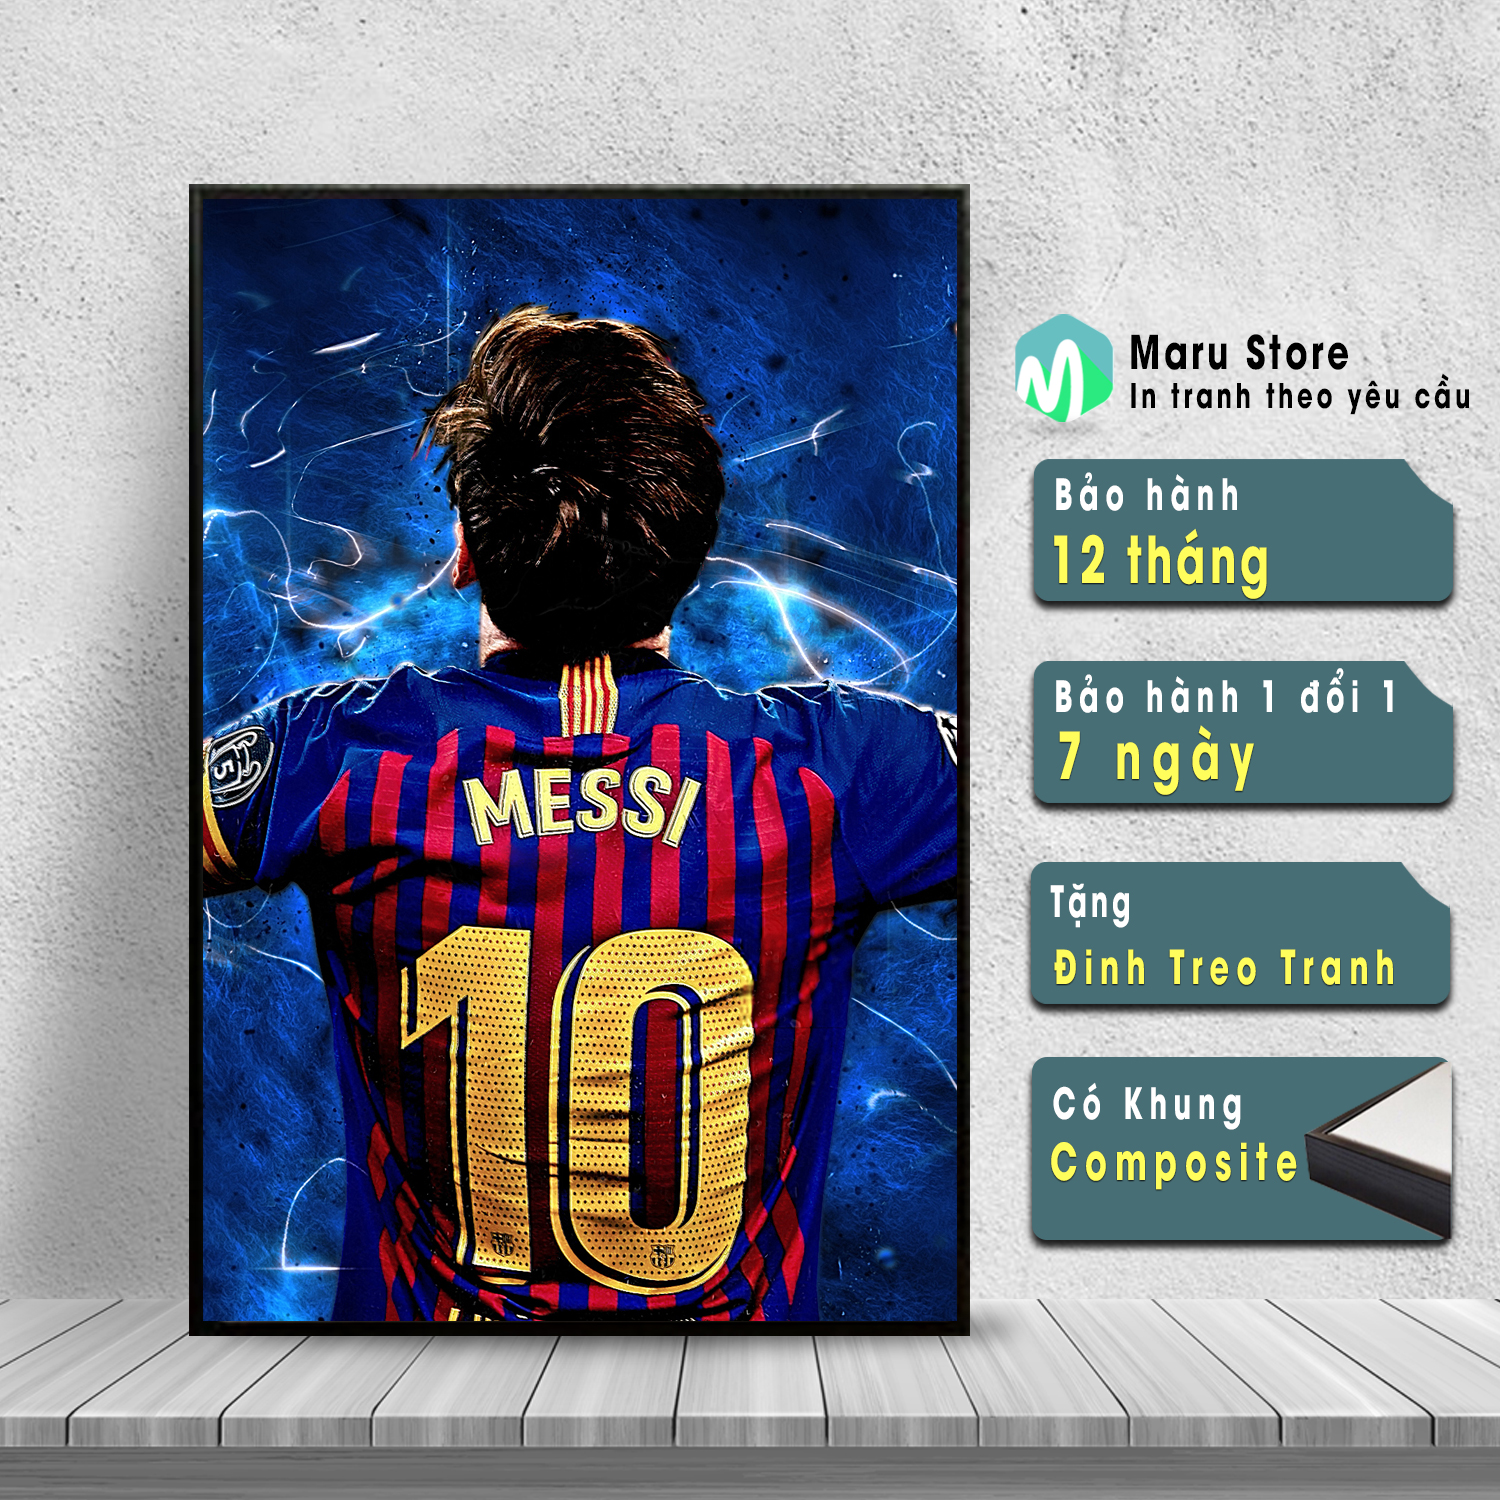 Nếu bạn yêu quý Messi, hãy để bức tranh treo tường của anh làm điểm nhấn cho căn phòng của bạn. Không gì tuyệt vời hơn khi có Messi luôn bên cạnh bạn.